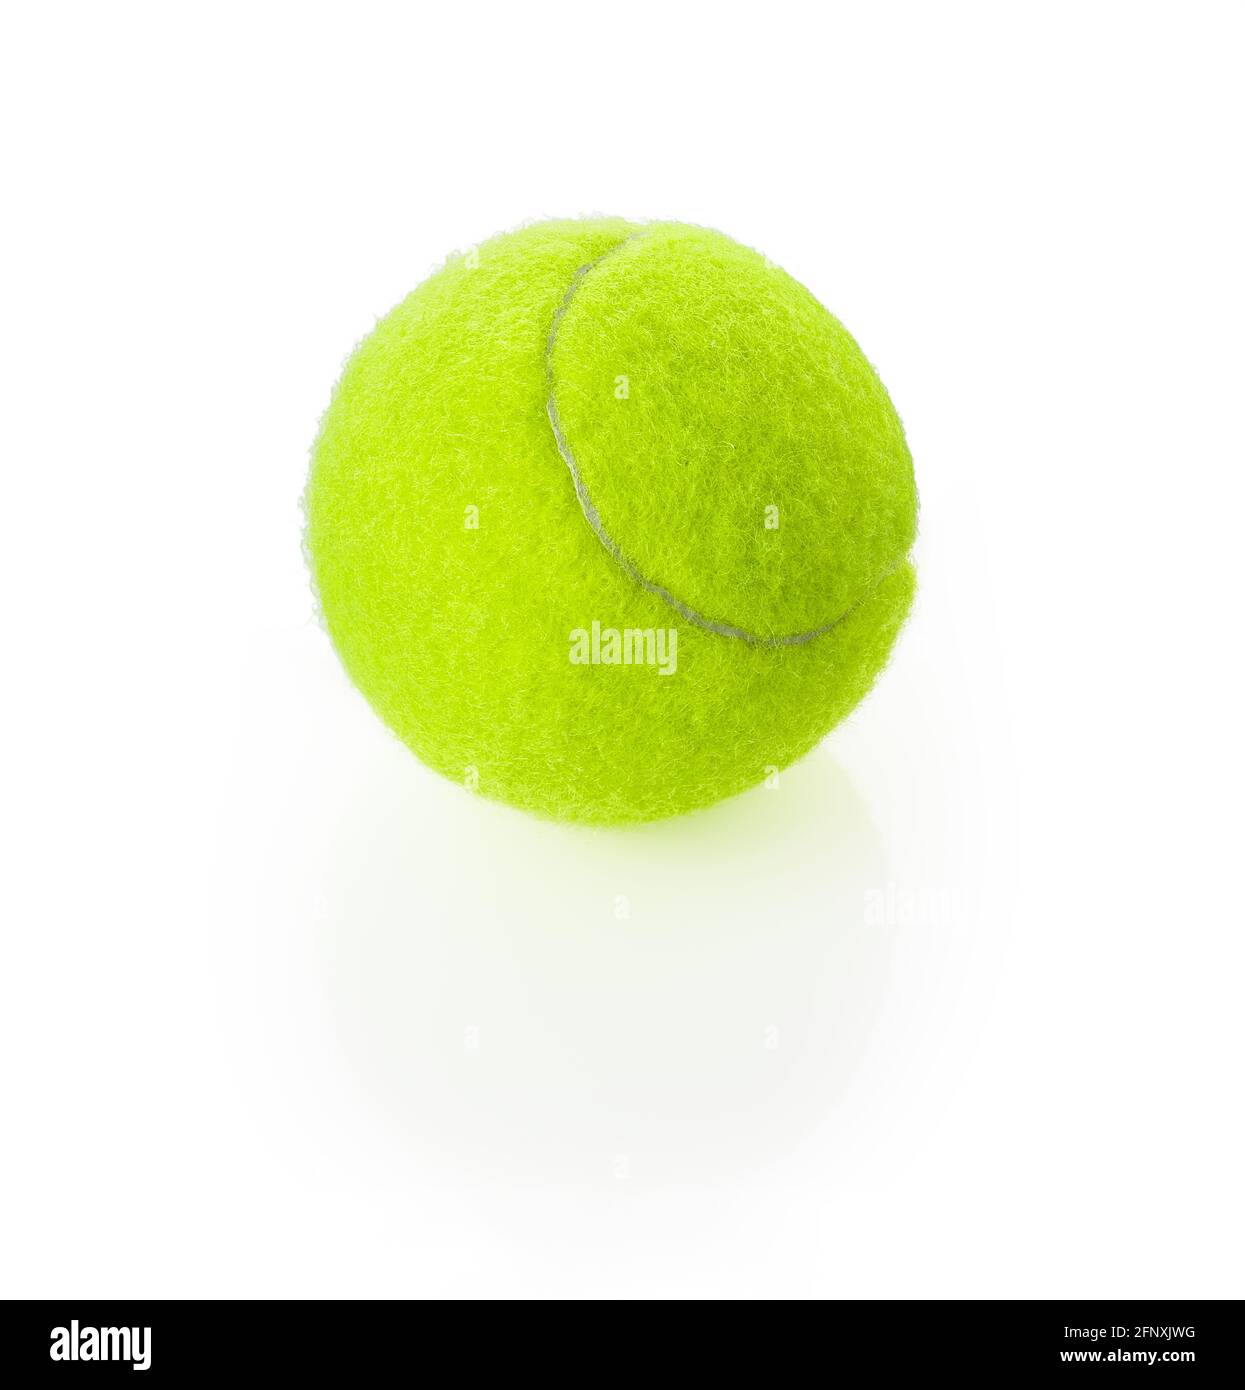 Nouvelle balle de tennis en feutre et caoutchouc isolée sur fond blanc.  Équipement de sport de couleur jaune vert néon brillant. Elément de  conception avec ombre Photo Stock - Alamy